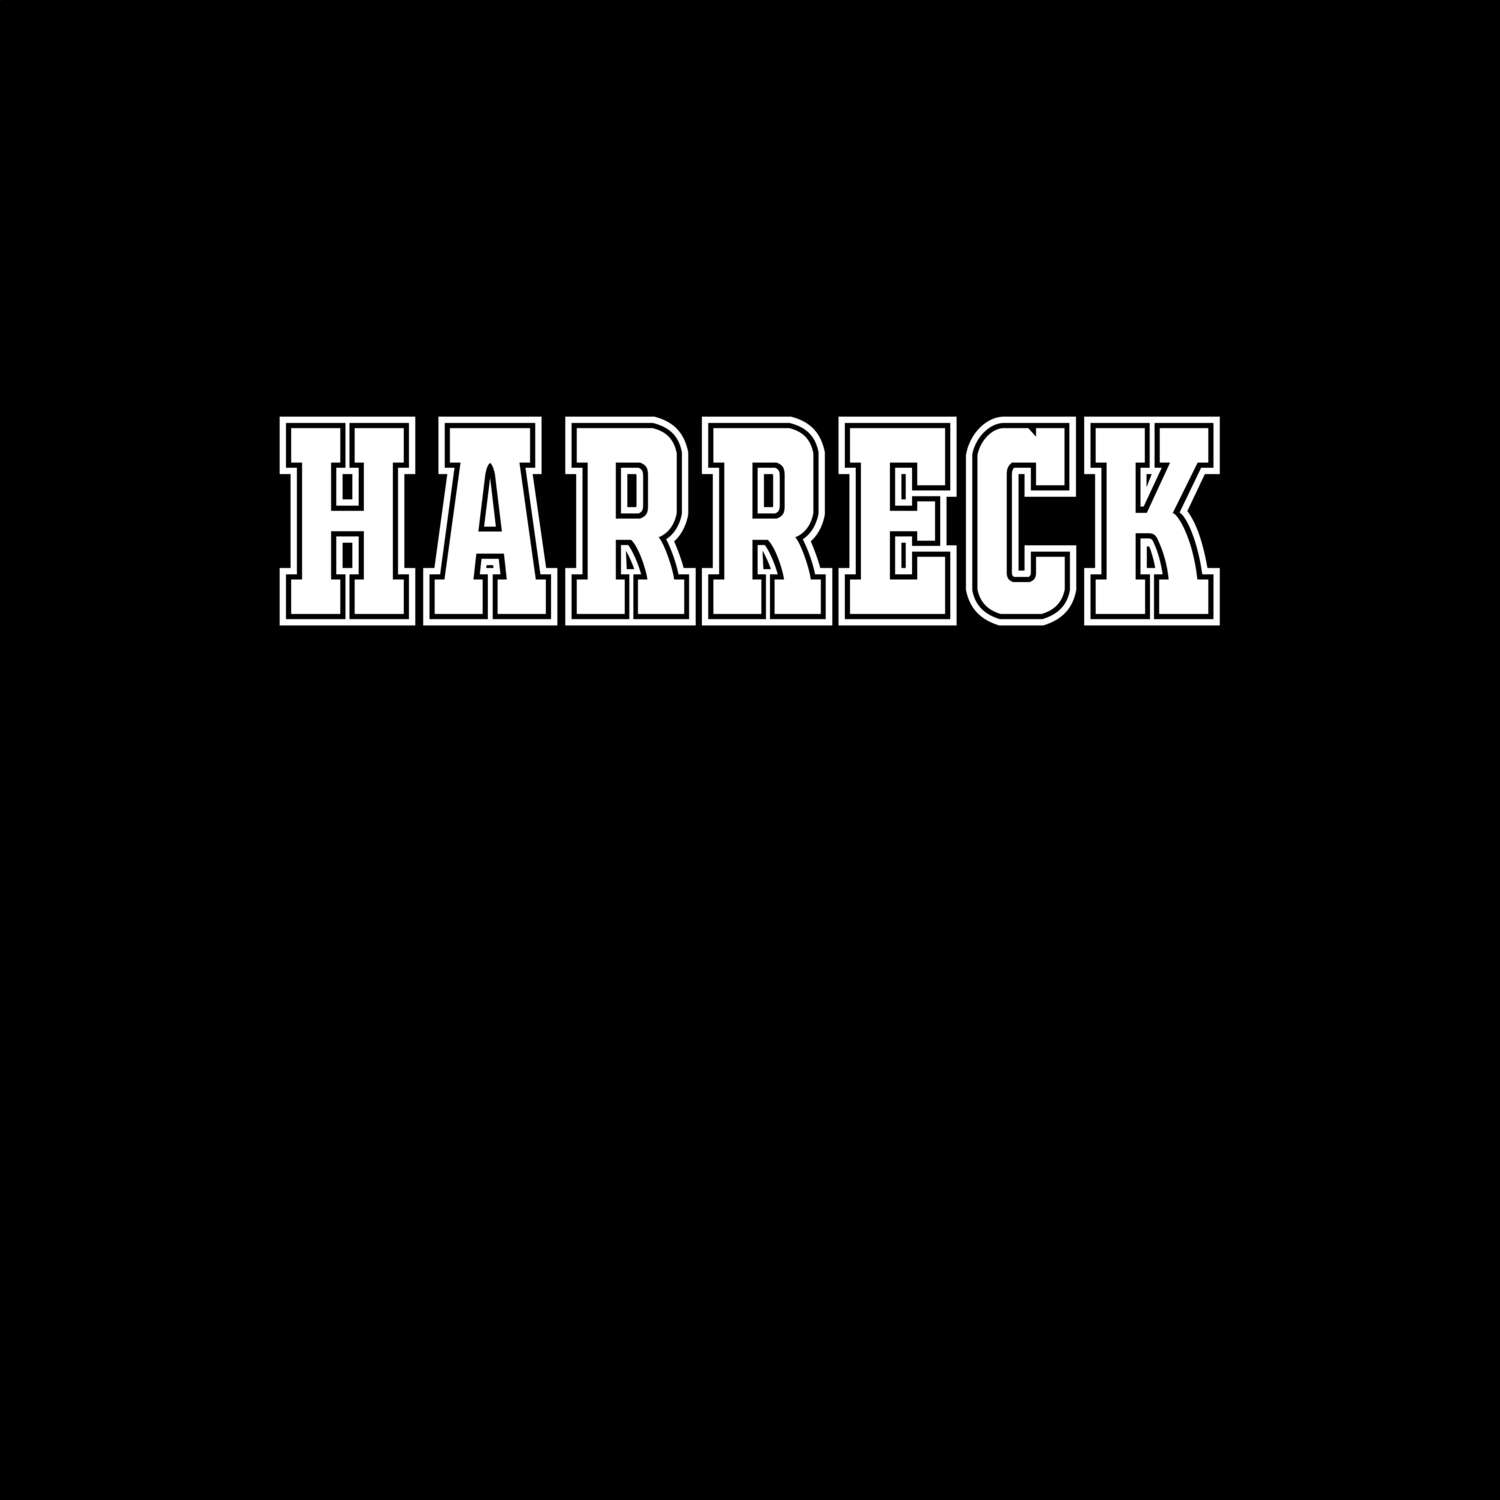 Harreck T-Shirt »Classic«